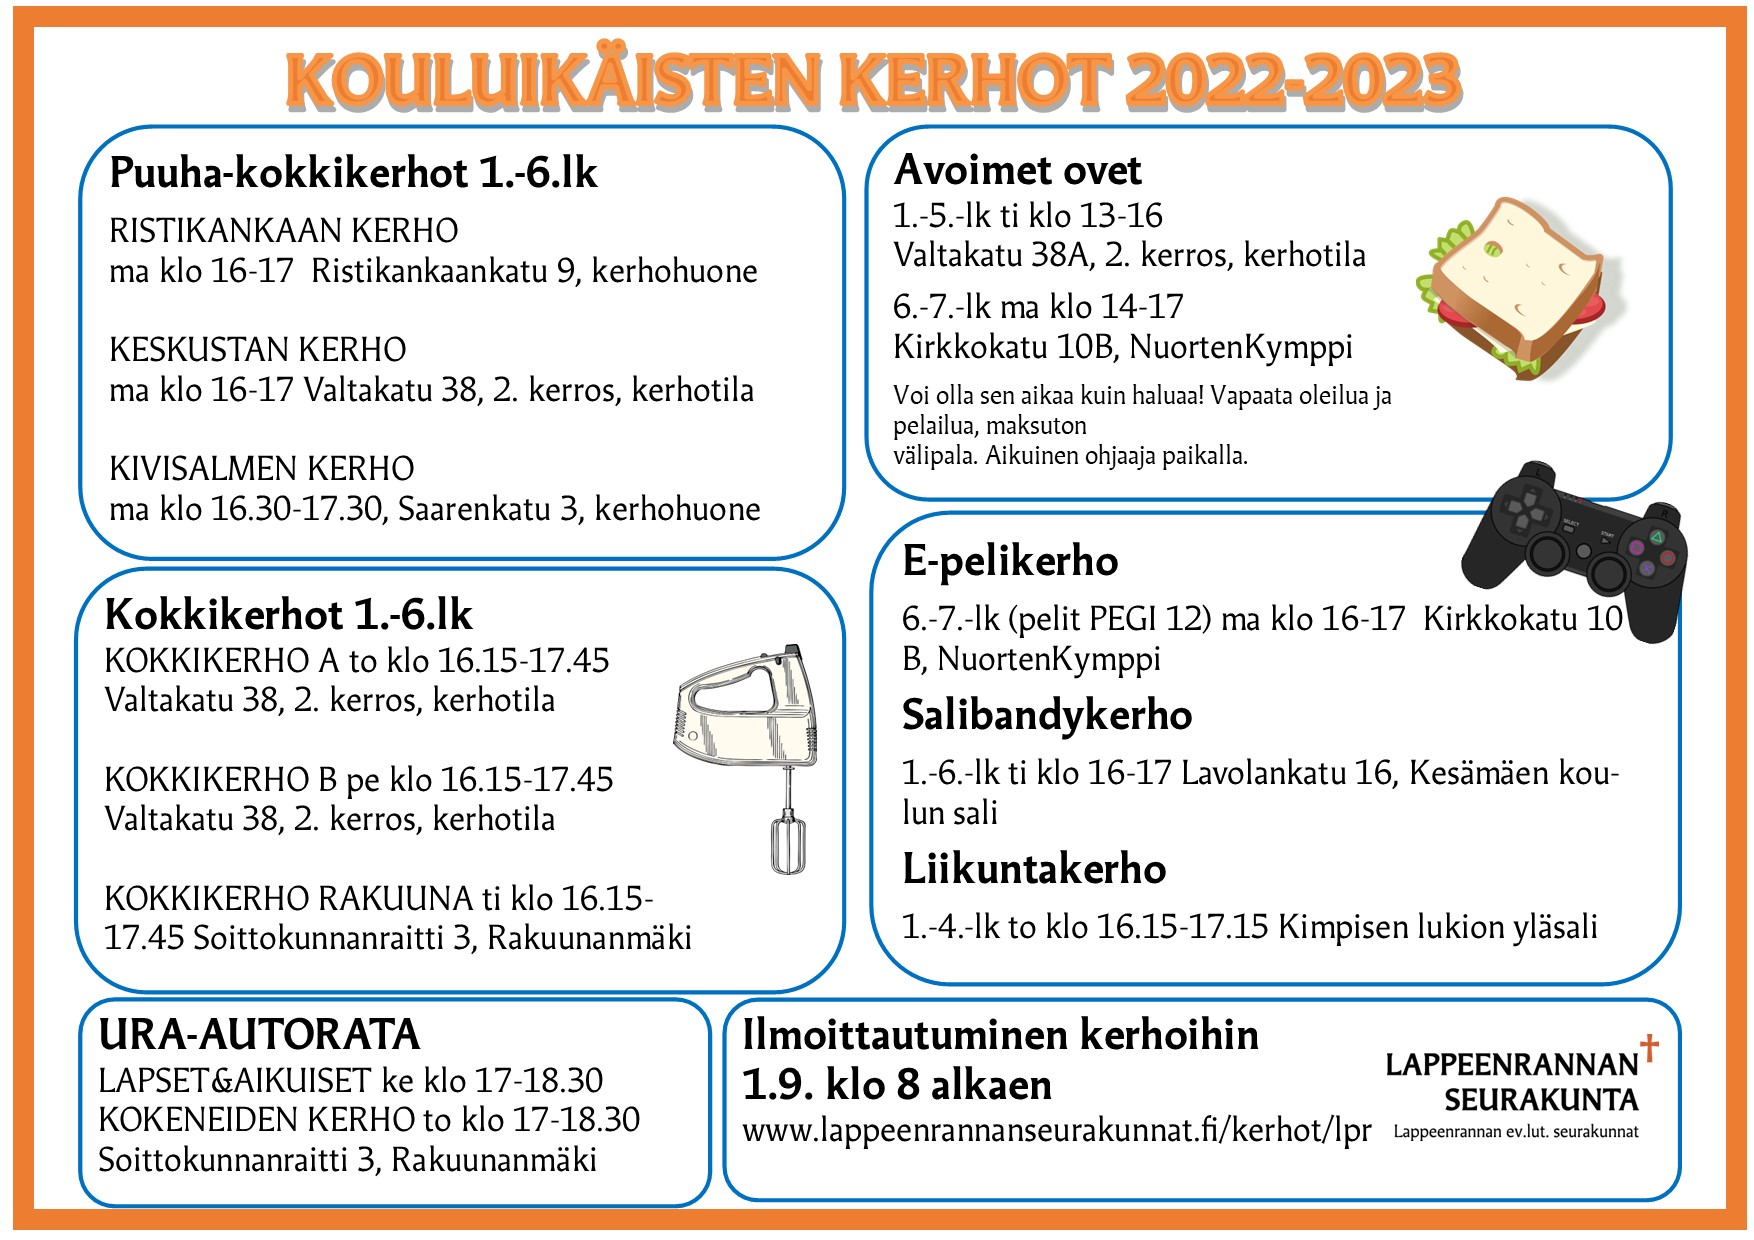 Lappeenrannan seurakunnan kouluikäisten kerhot 2022-2023